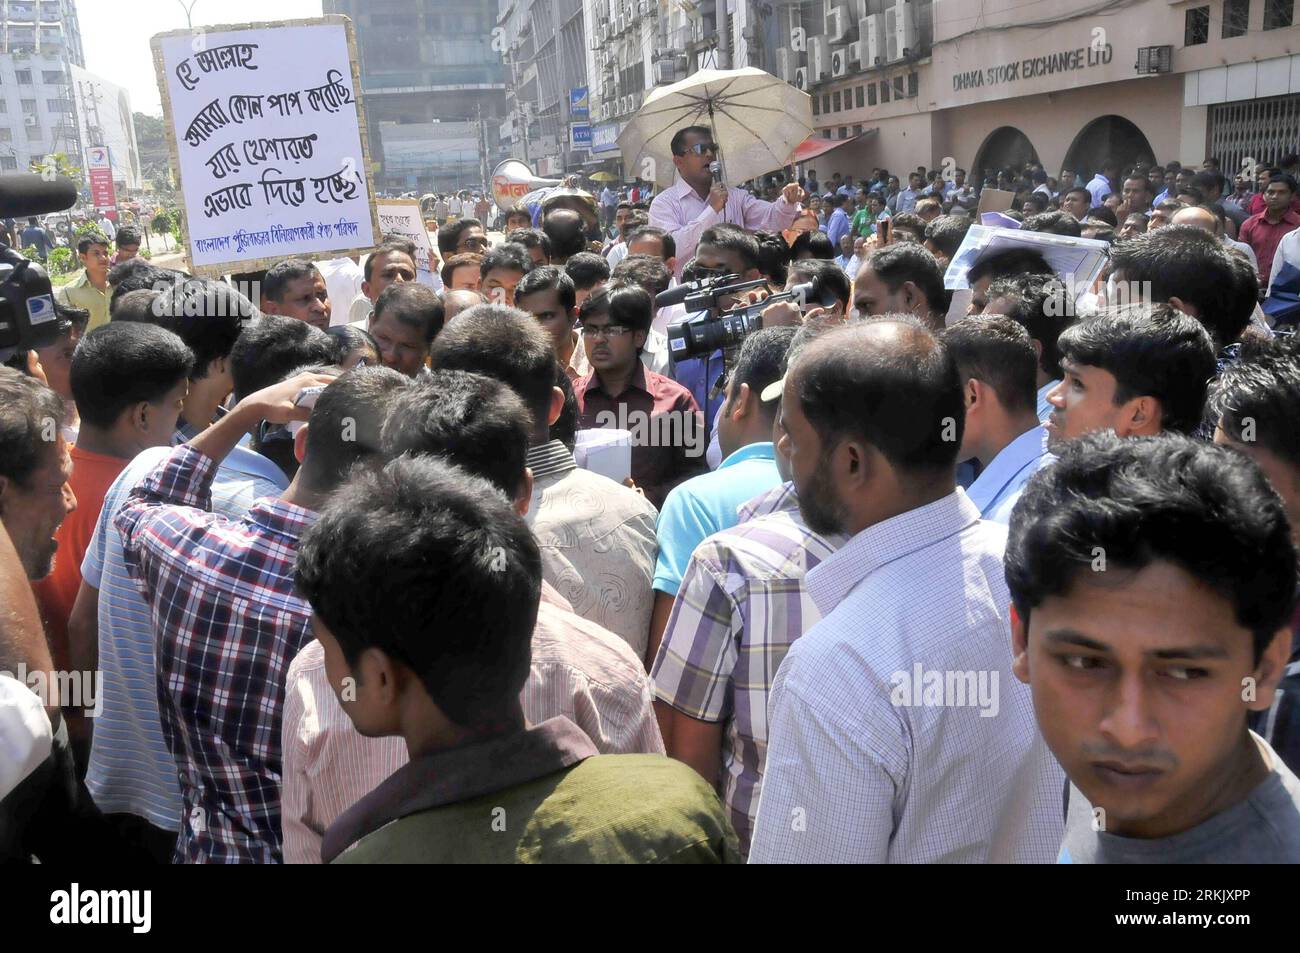 Bildnummer: 56170830 Datum: 12.10.2011 Copyright: imago/Xinhua (111012) -- DHAKA, 12. Oktober 2011 (Xinhua) -- Demonstranten versammeln sich vor der Dhaka-Börse für eine Demonstration in Dhaka, Bangladesch, am 12. Oktober 2011. Eine Gruppe kleiner Investoren setzte ihre Demonstration am Mittwoch vor Bangladeschs hauptniederlassung in der Hauptstadt Dhaka fort und protestierte gegen einen steilen Preisverfall. (Xinhua/Shariful Islam) (nxl) BANGLADESCH-DHAKA-STOCK-PROTEST PUBLICATIONxNOTxINxCHN Gesellschaft Wirtschaft Demo Protest Börse Anleger Preisverfall Inflation Premuiumd xbs x0x 2011 quer 56170830 Datum 12 10 20 Stockfoto